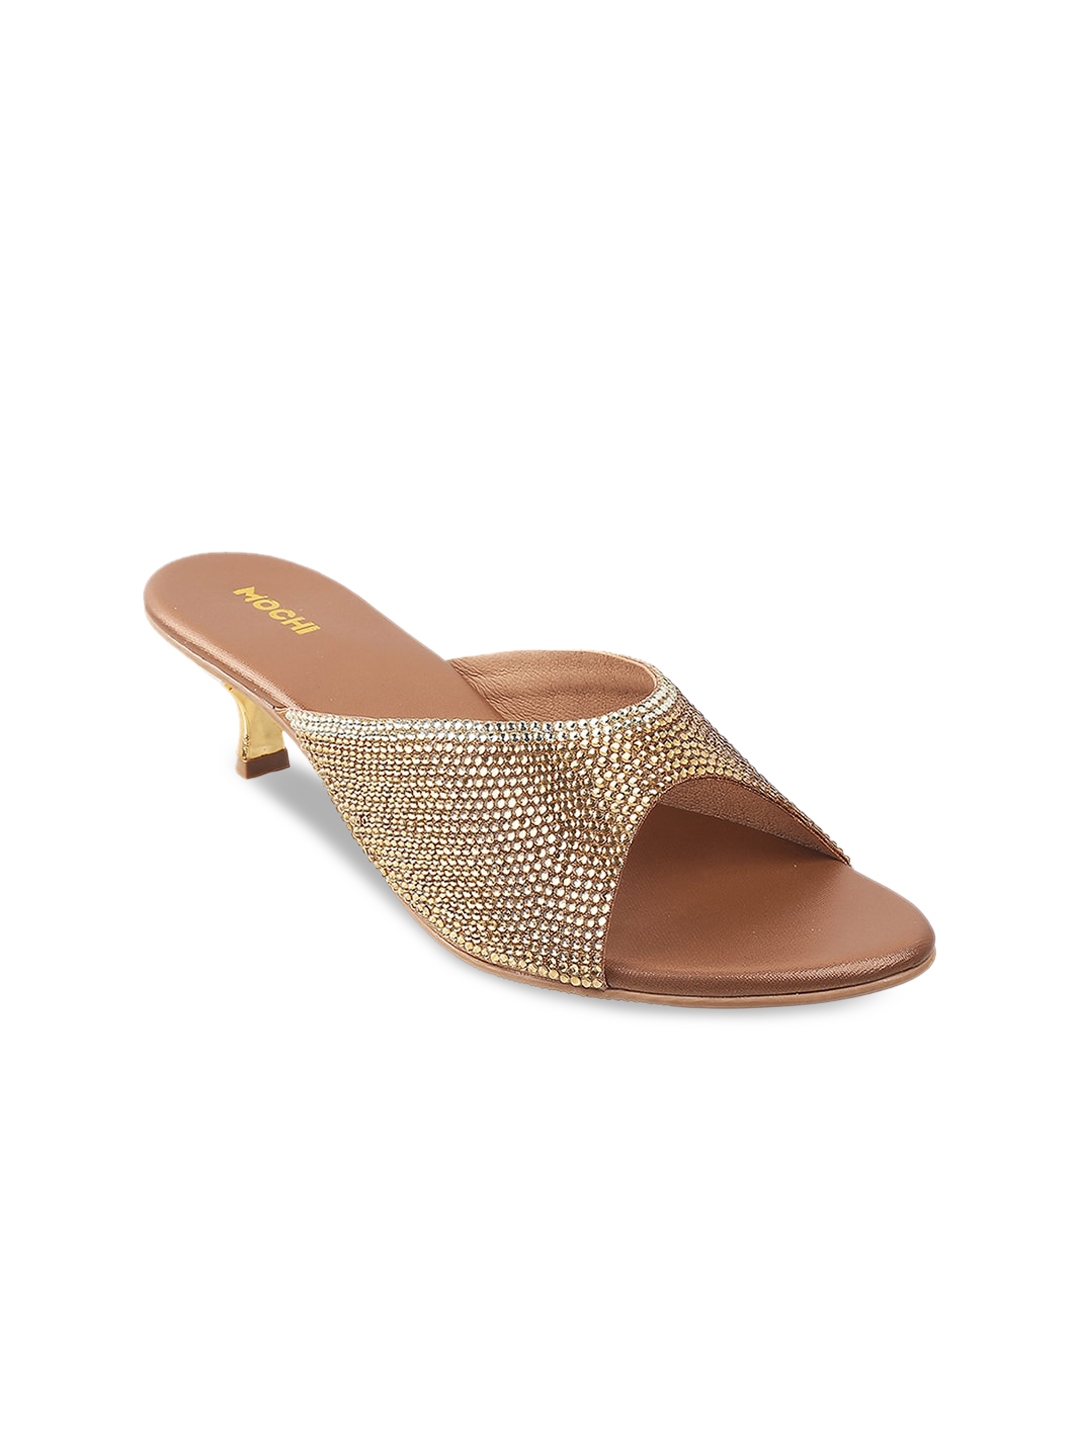 Buy Mochi Gold Toned Embellished Wedge Sandals - Heels for Women ...